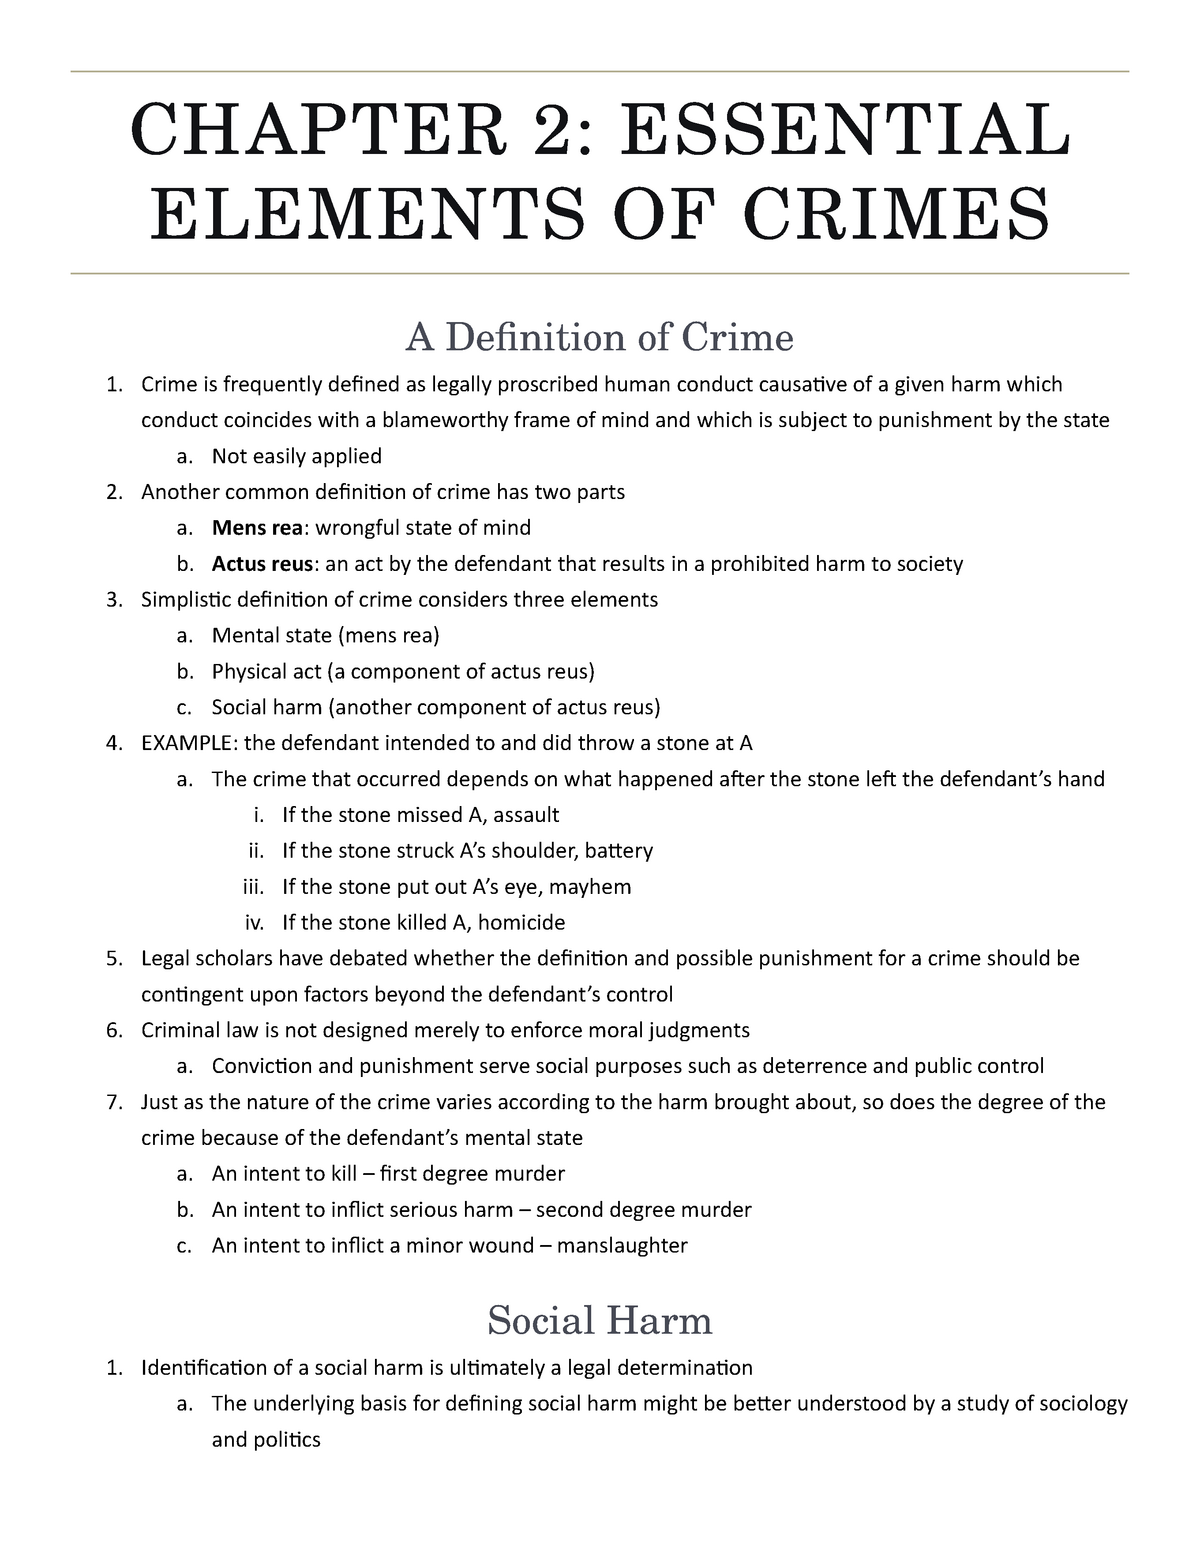 elements of a crime essay questions